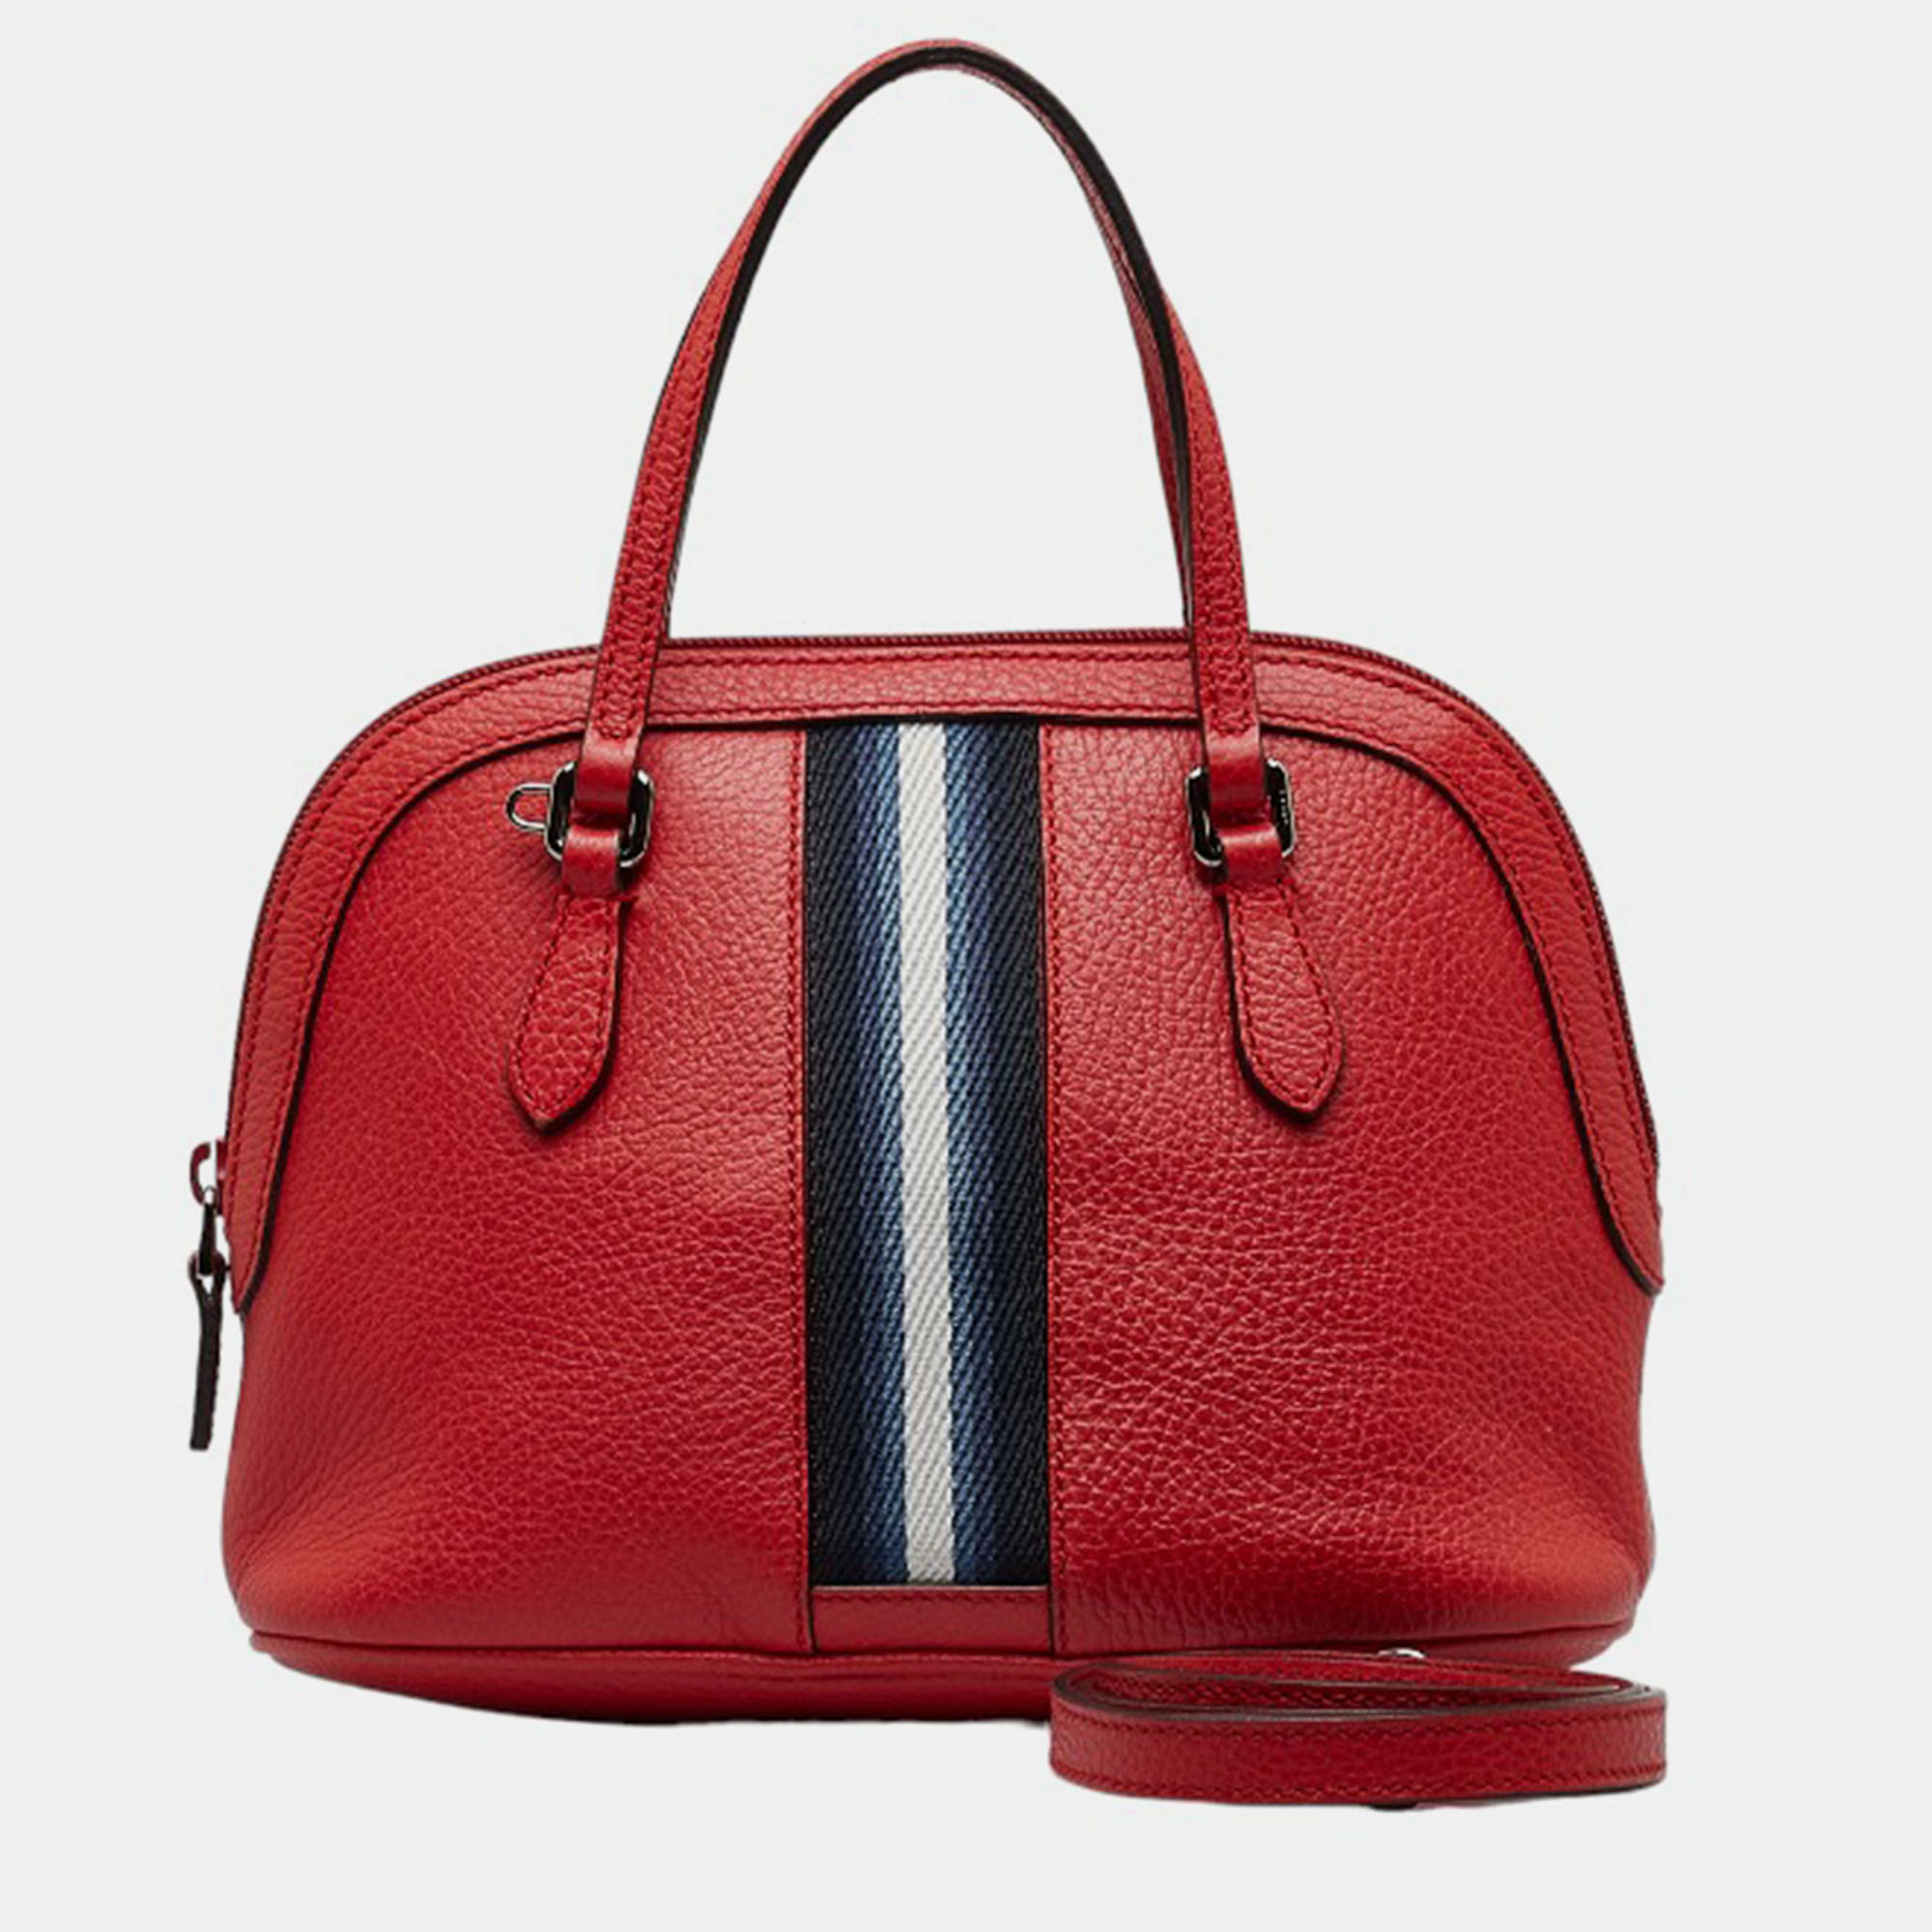 Gucci Red Leather Mini Dome Handbag